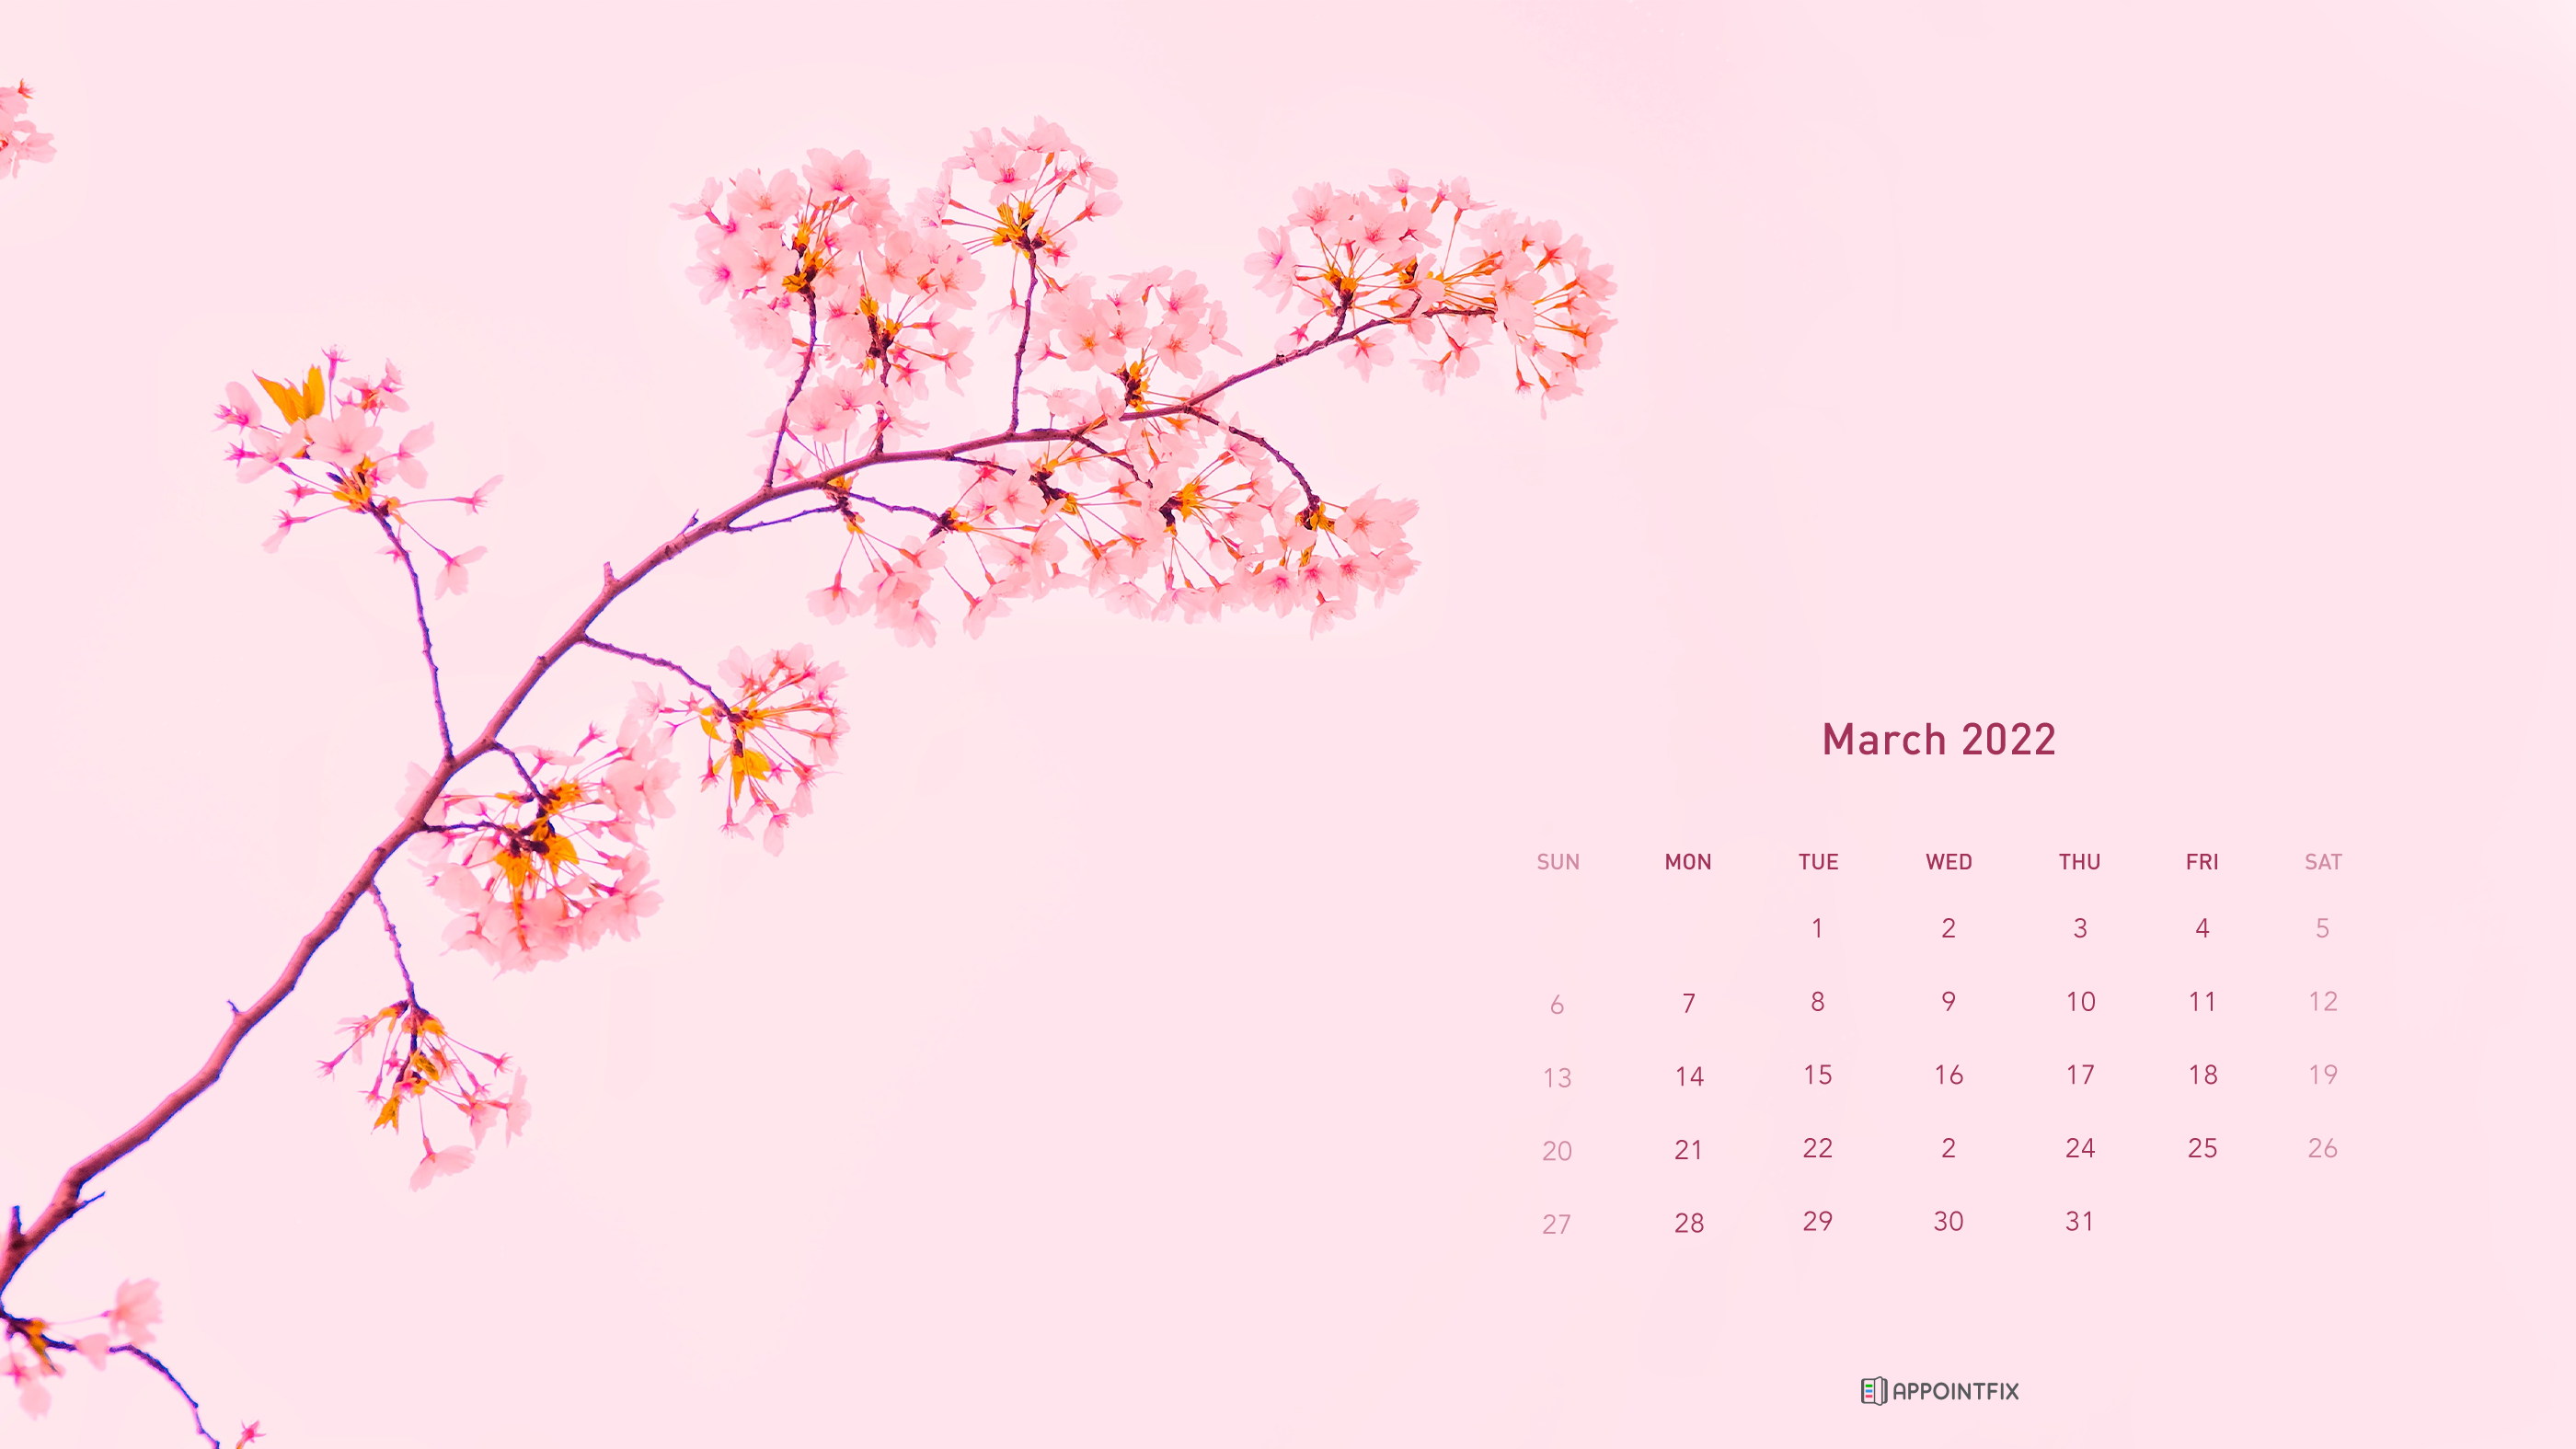 Chào mừng đến với bộ sưu tập hình nền lịch tháng 3 năm 2022 tuyệt đẹp trên Wallpaper Cave! Với các màu sắc và hình ảnh độc đáo, bạn sẽ có thể đem lại một không gian làm việc mới mẻ và sáng tạo cho mình. Nhấp chuột để xem ngay bức tranh lịch tháng 3 năm 2022 bạn yêu thích!